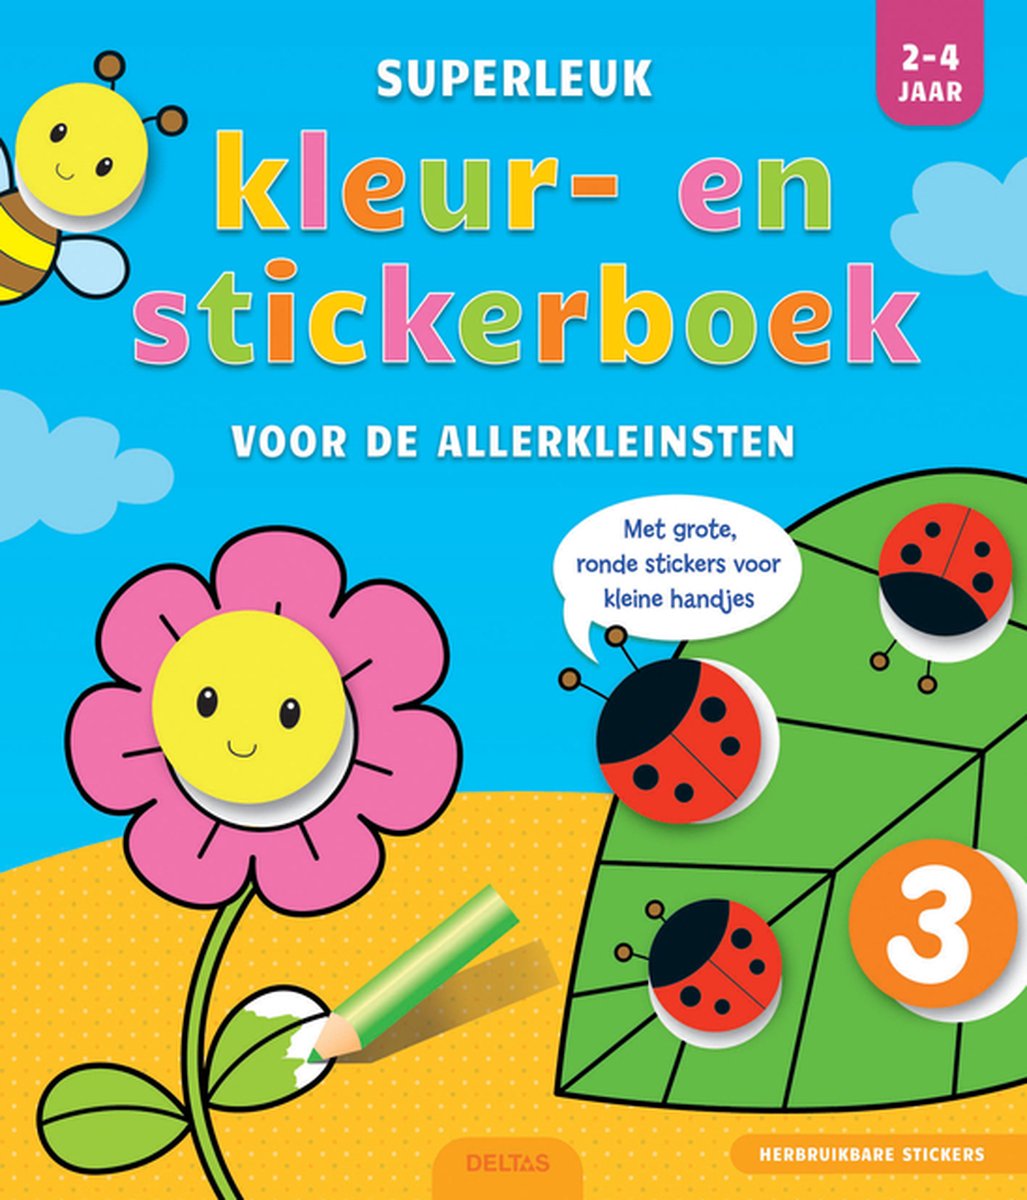 scheuren afstand Baan Superleuk kleur- en stickerboek voor de allerkleinsten 2-4 jaar |  9789044749366 | Boeken | bol.com